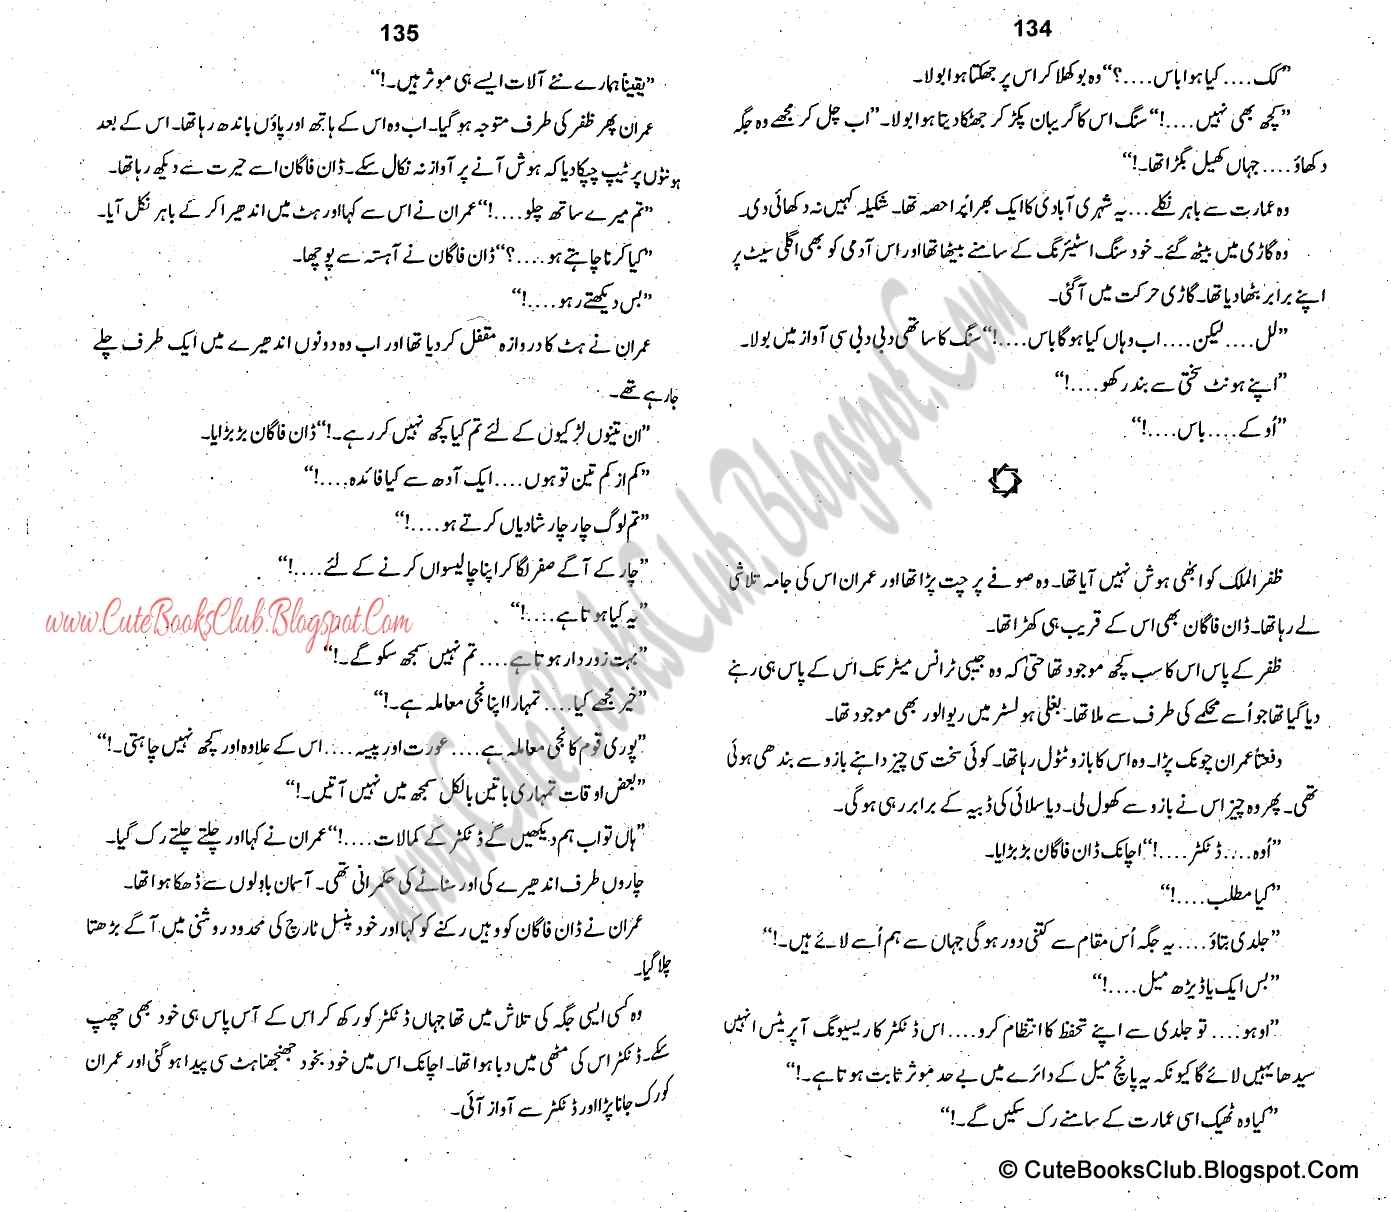 065-Phir Wahi Awaaz, Imran Series By Ibne Safi (Urdu Novel)